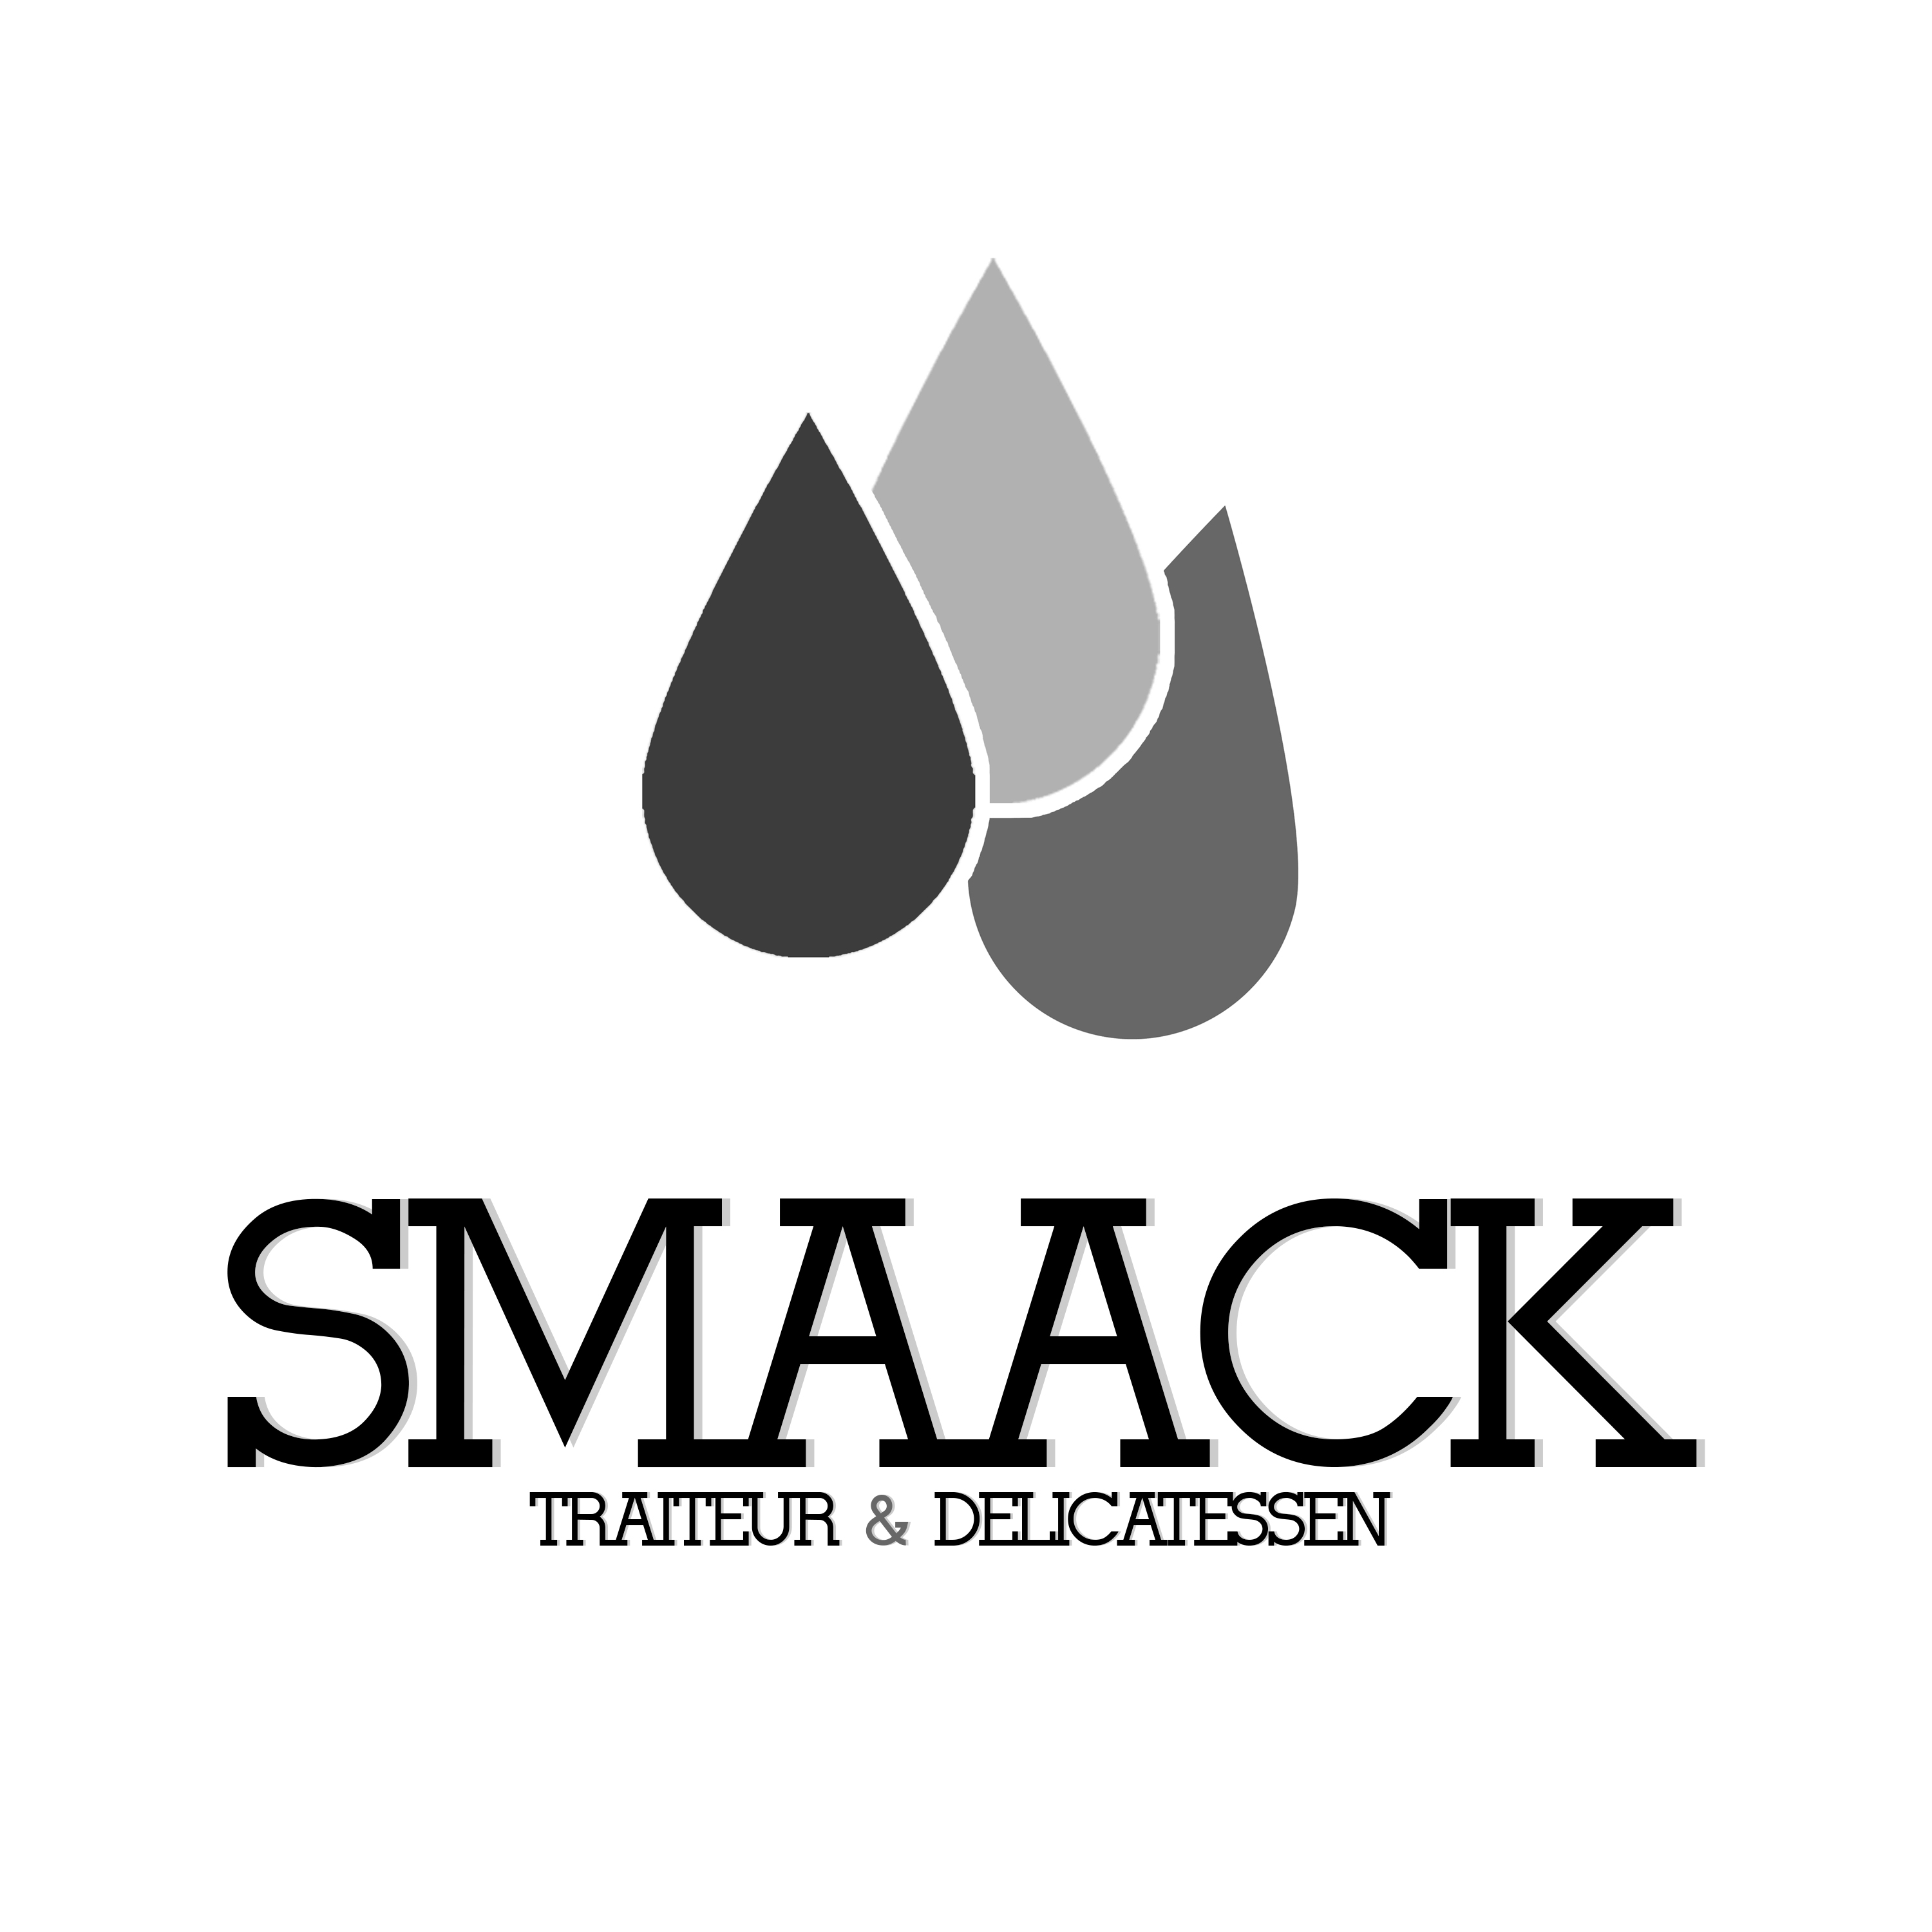 smaack_logo_hogeresolutie_zwart-wit.jpg